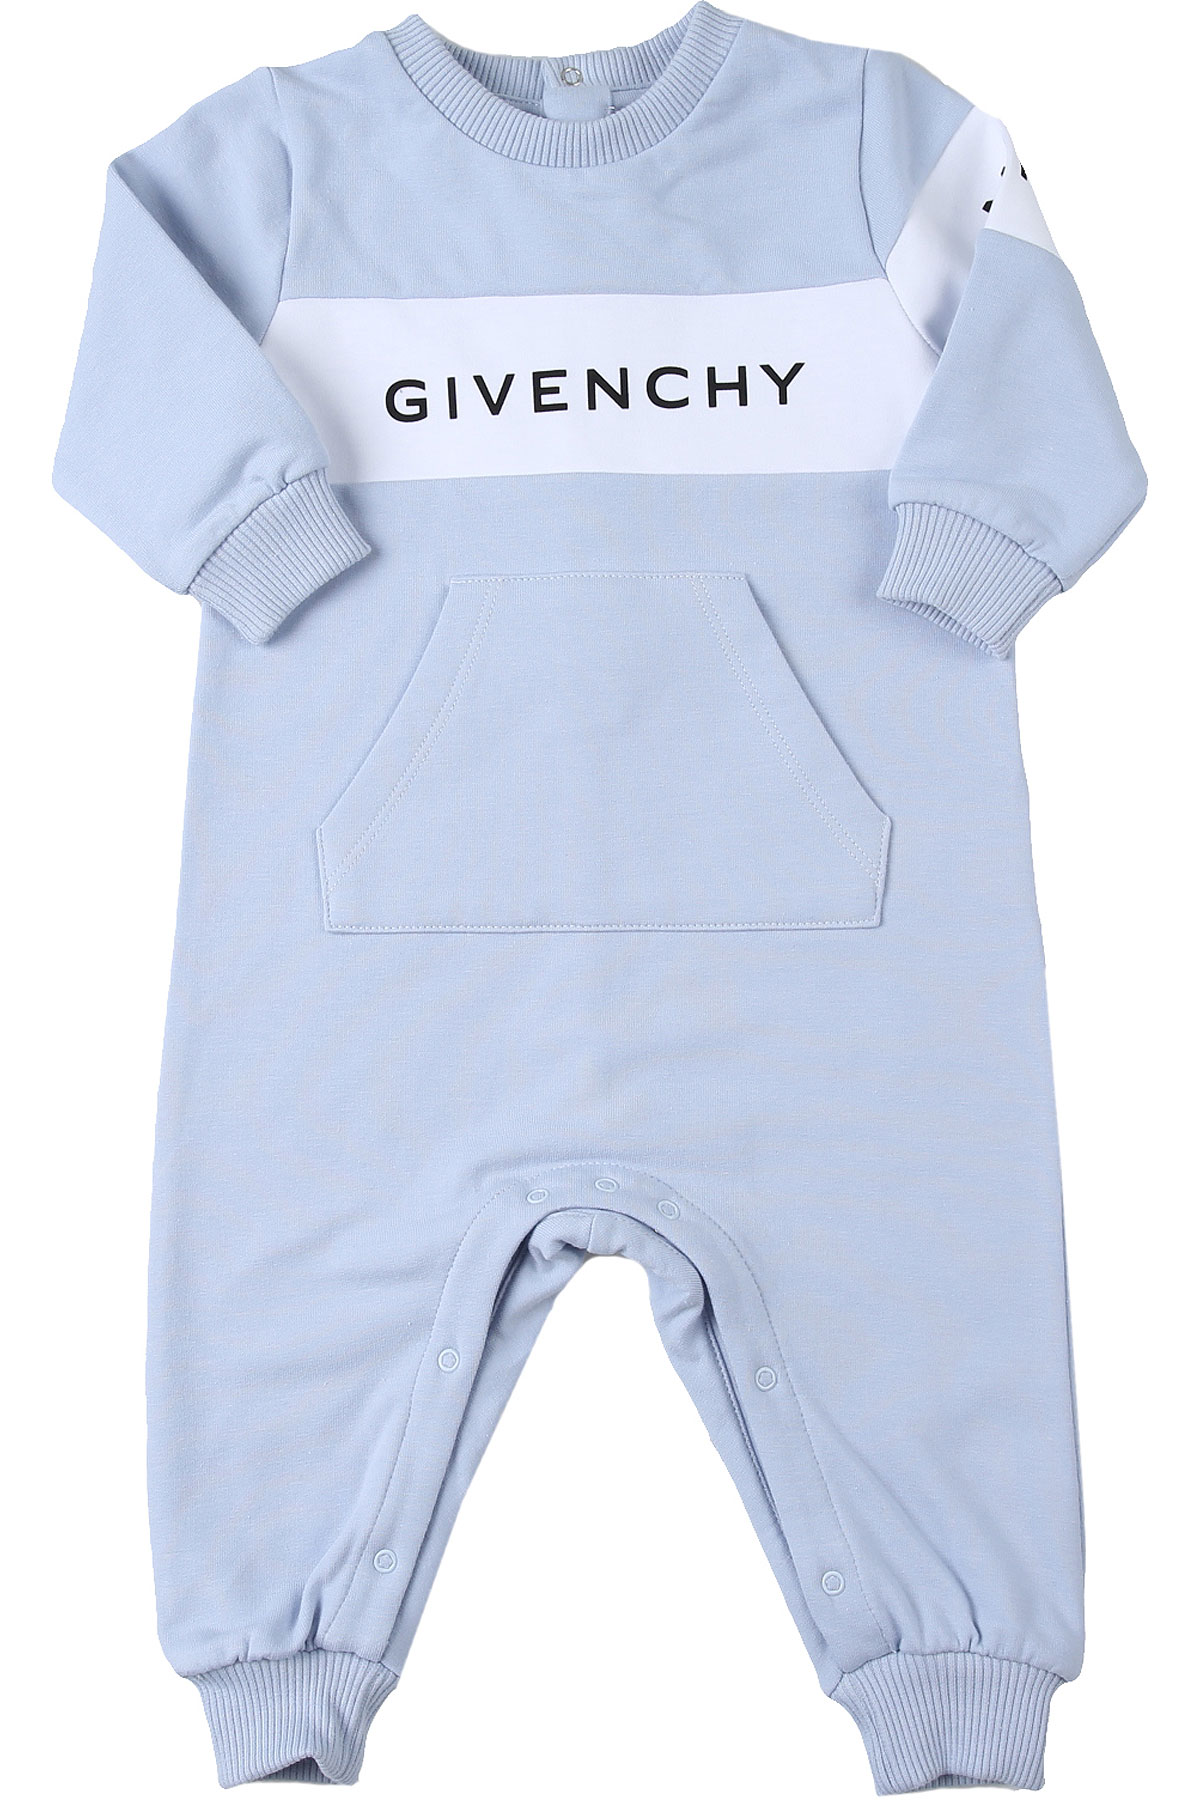 Givenchy Baby Bodys & Strampelanzug für Jungen Günstig im Sale, Himmelblau, Baumwolle, 2017, 1M 3M